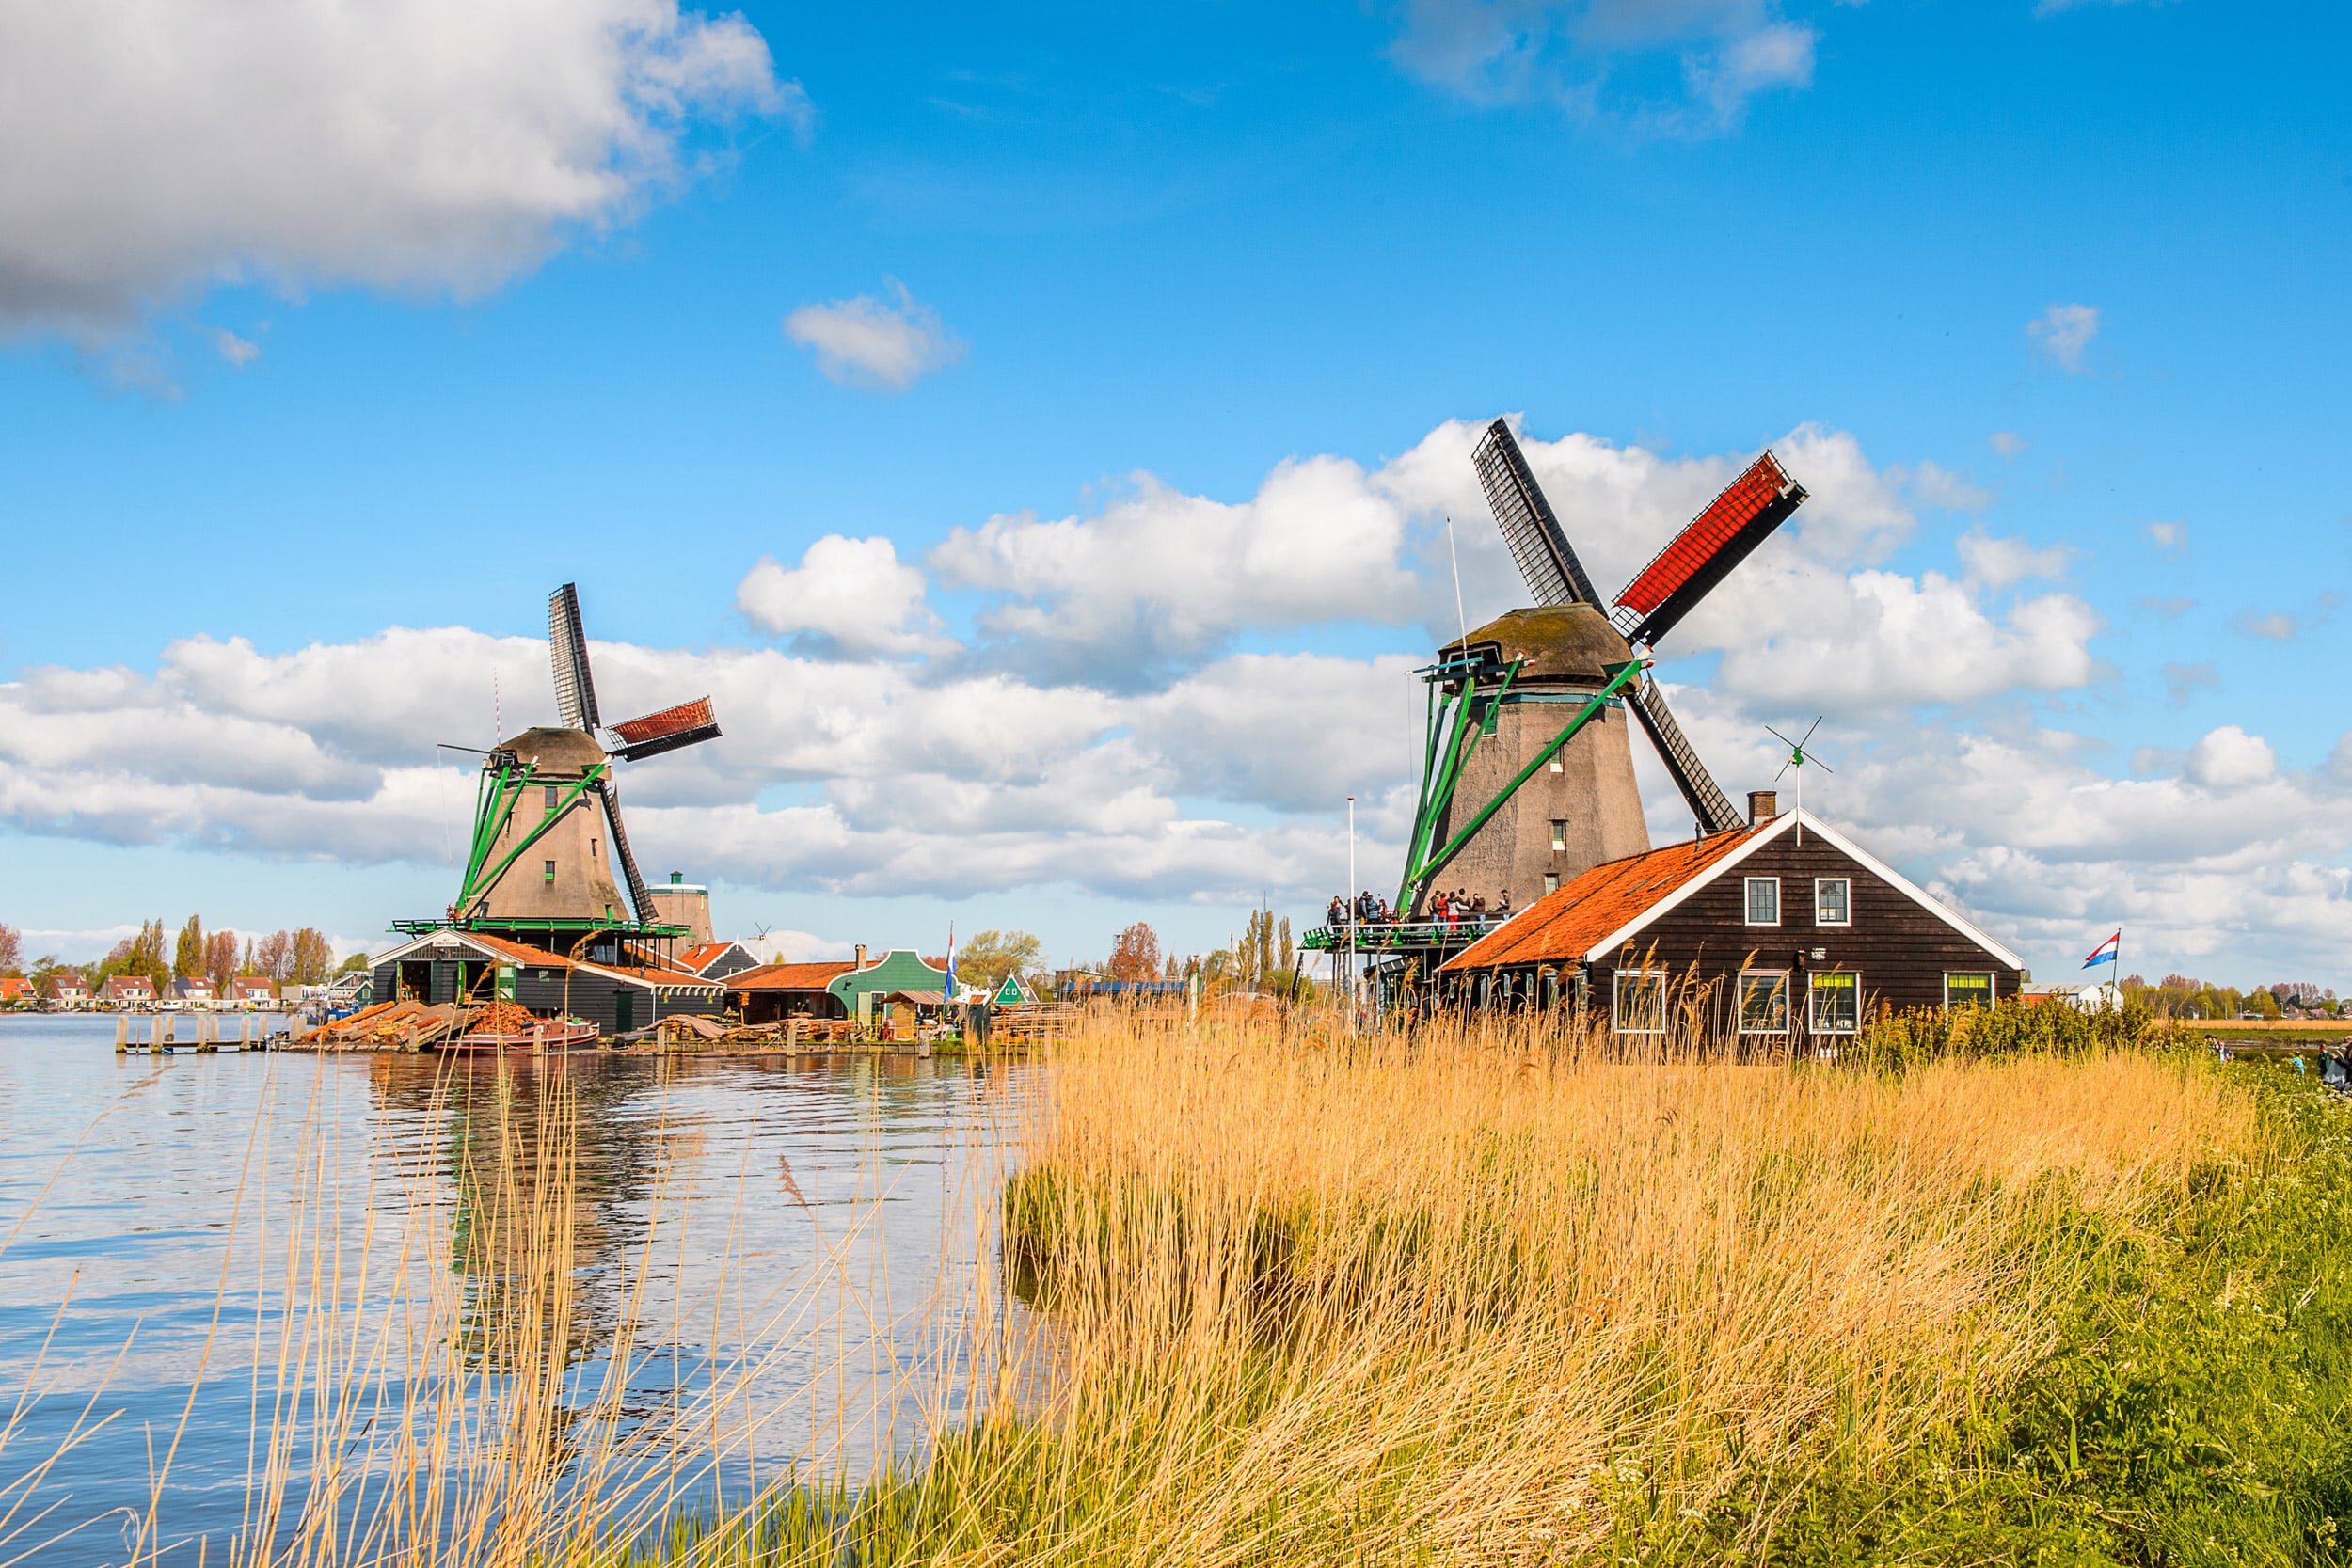 Vakantie tips Noord-Holland | Wat te zien &amp; waar verblijven?